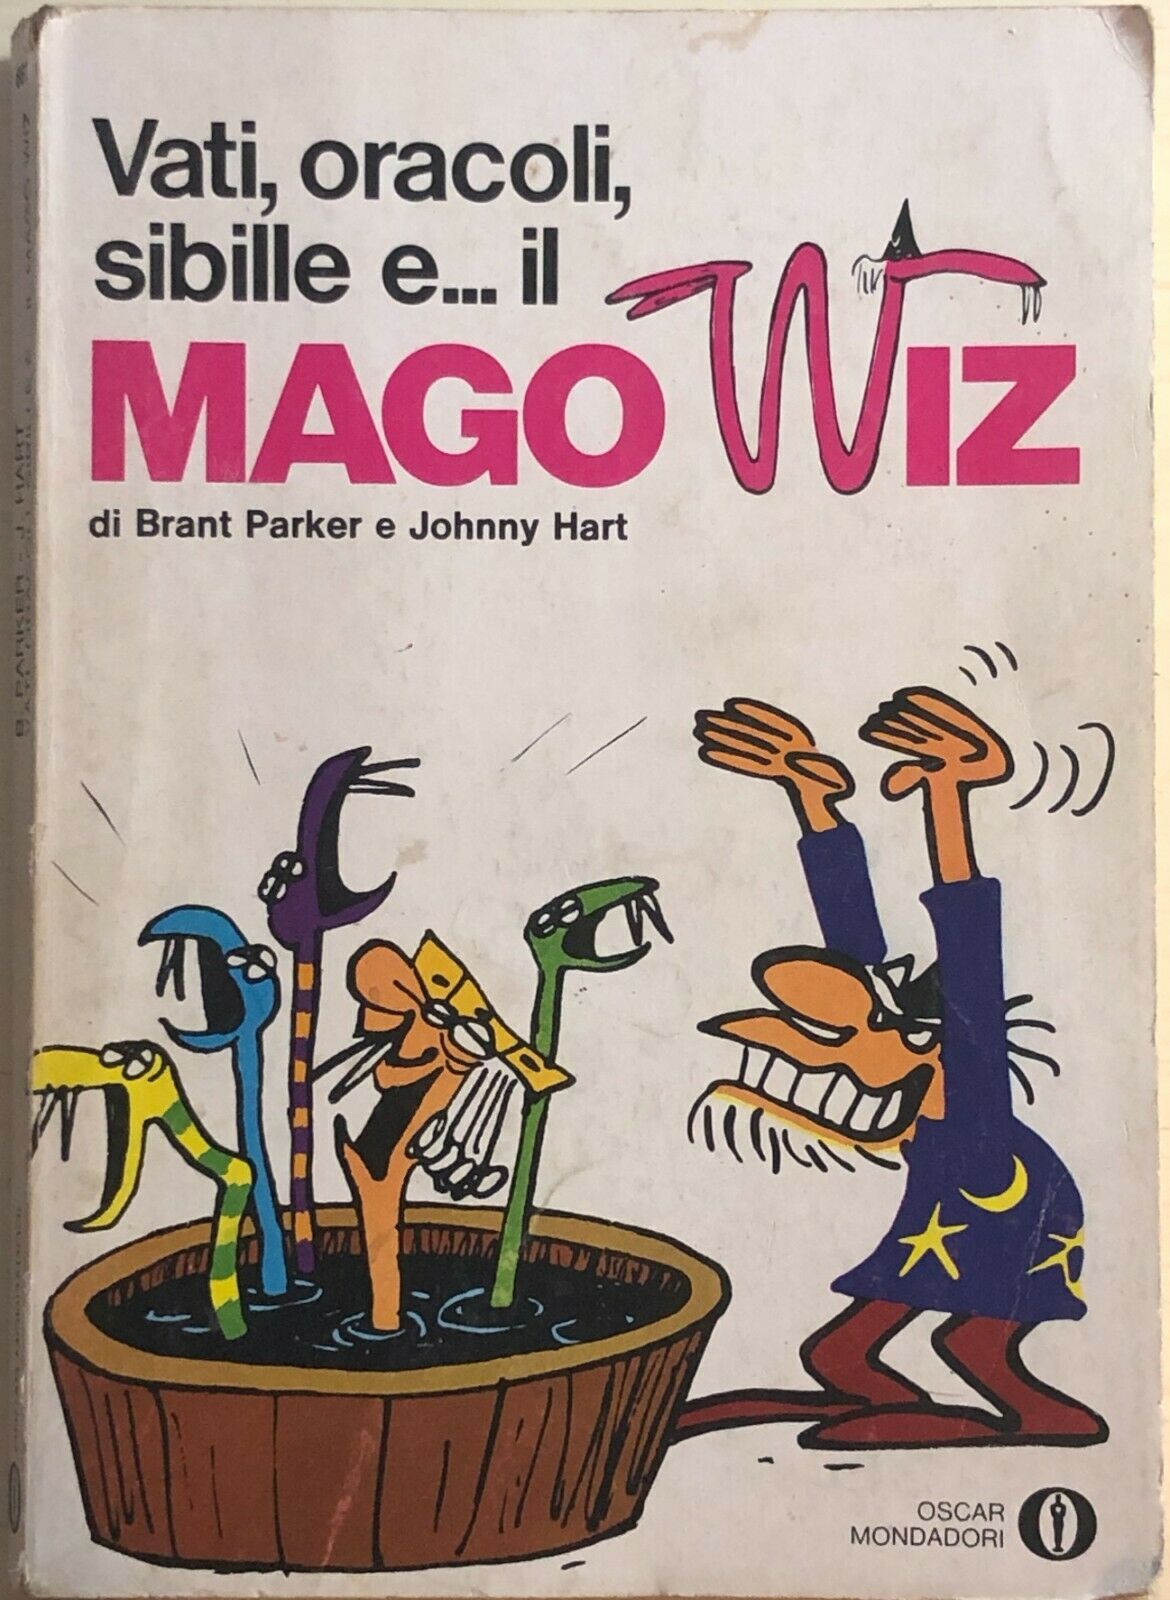 Vati, oracoli, sibille e... il mago Wiz di Aa.vv., 1976, Mondadori